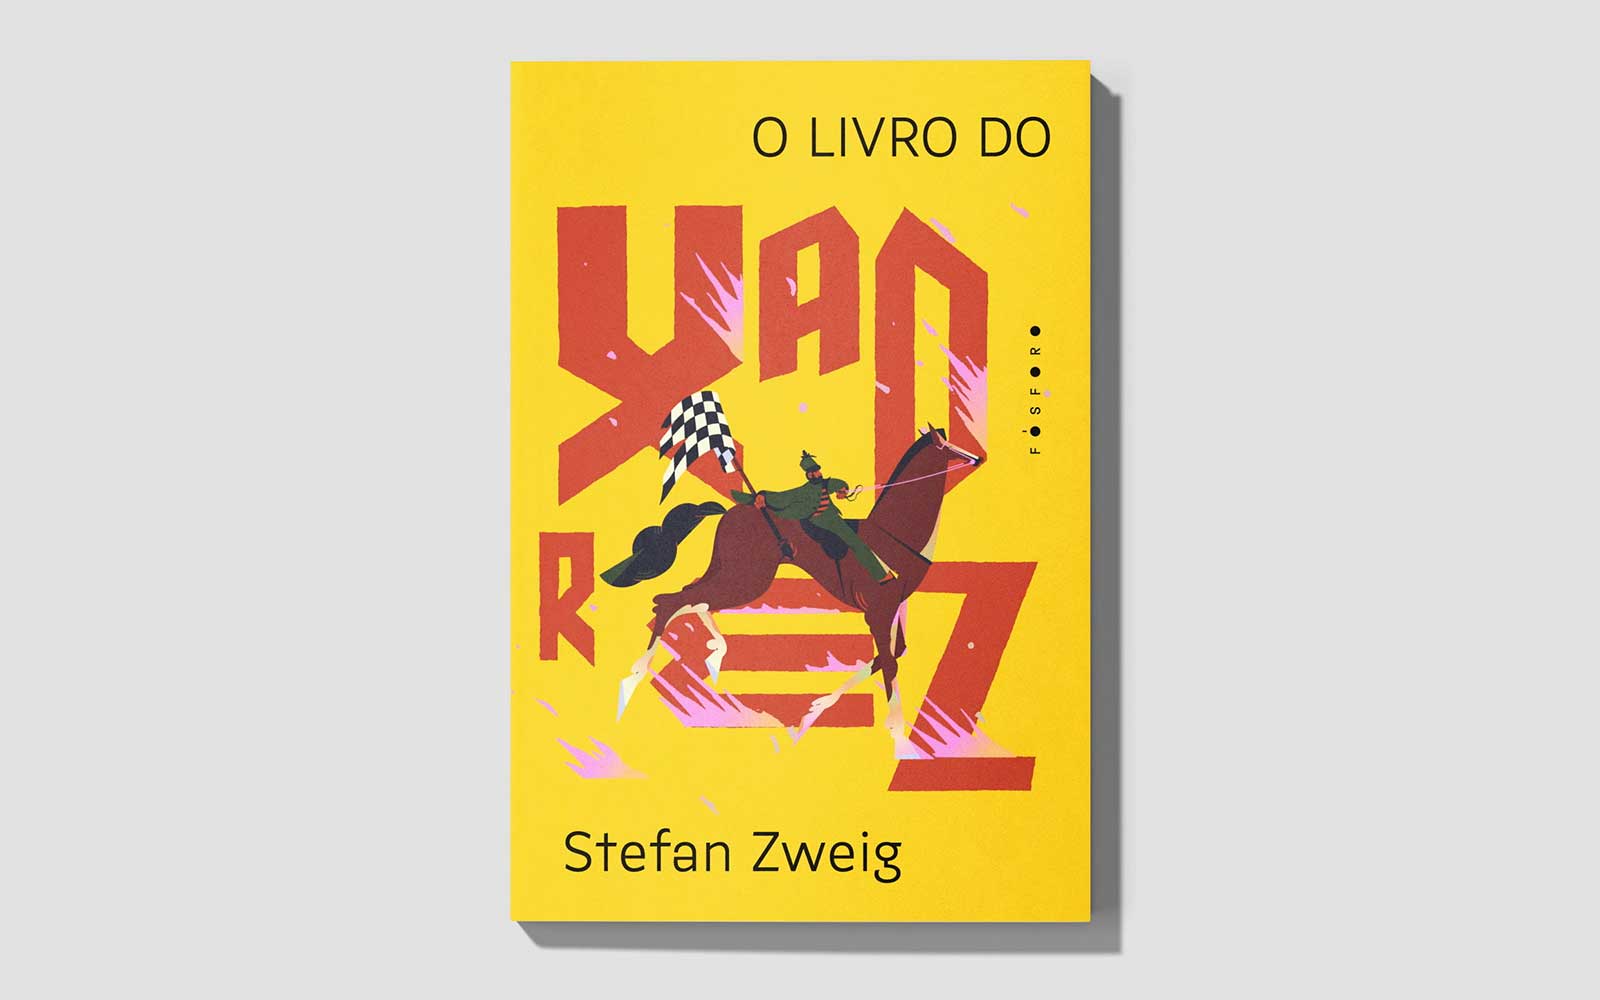 Crítica: em último livro, Stefan Zweig usa o xadrez para discutir